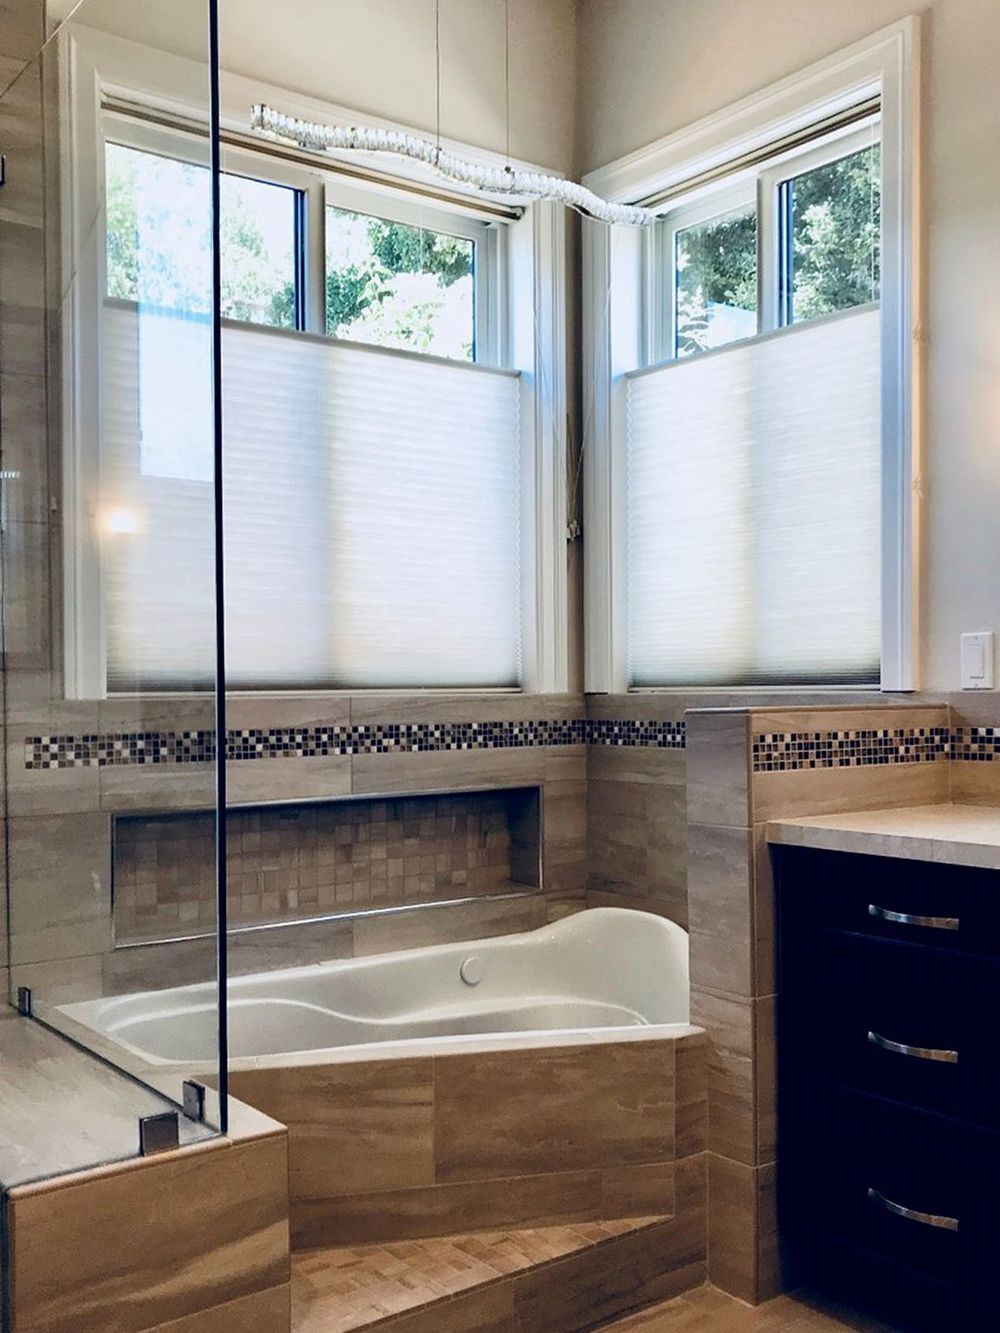 主浴室拥有一个引人注目的浴缸和步入式淋浴房。房间的特色窗户与窗帘以及。